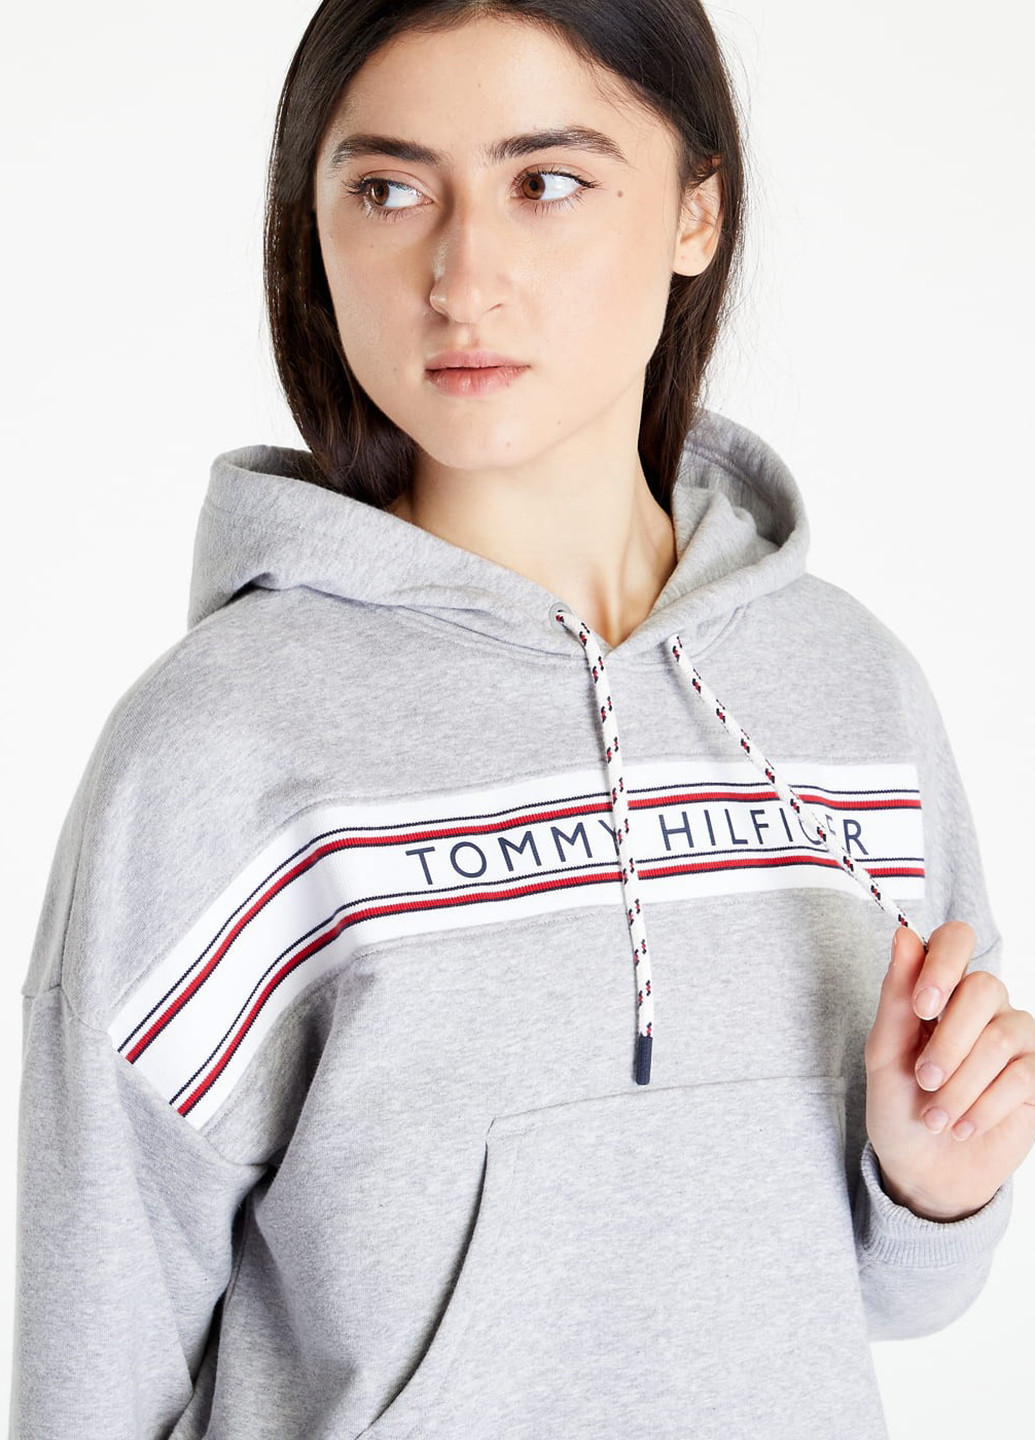 Худи Tommy Hilfiger логотипы светло-серые кэжуалы трикотаж, хлопок